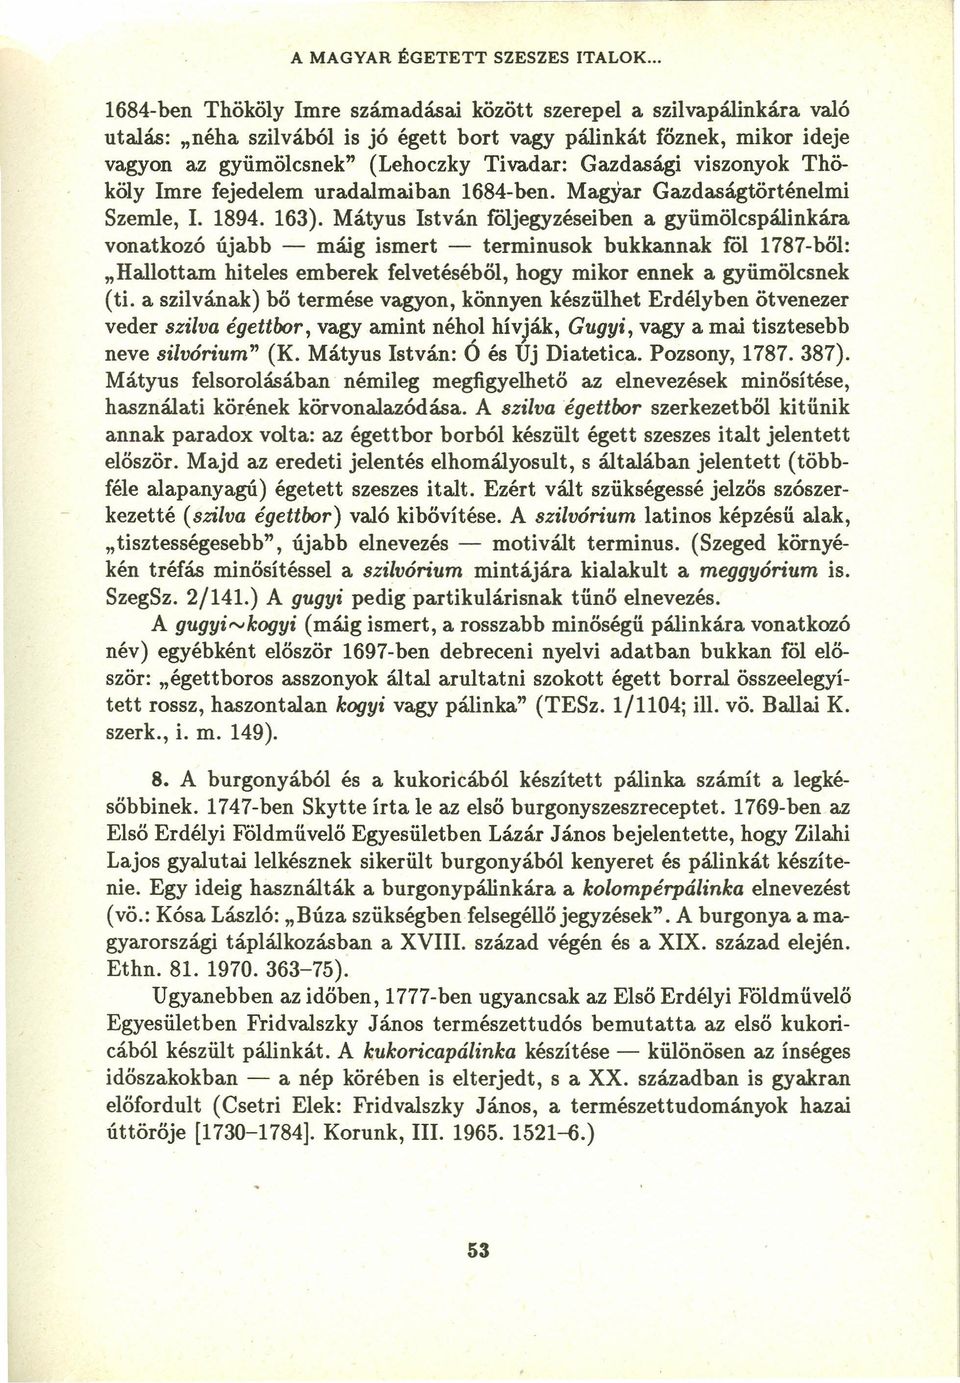 Gazdasági viszonyok Thököly Imre fejedelem uradalmaiban 1684-ben. Magyar Gazdaságtörténelmi Szemle, 1. 1894. 163).